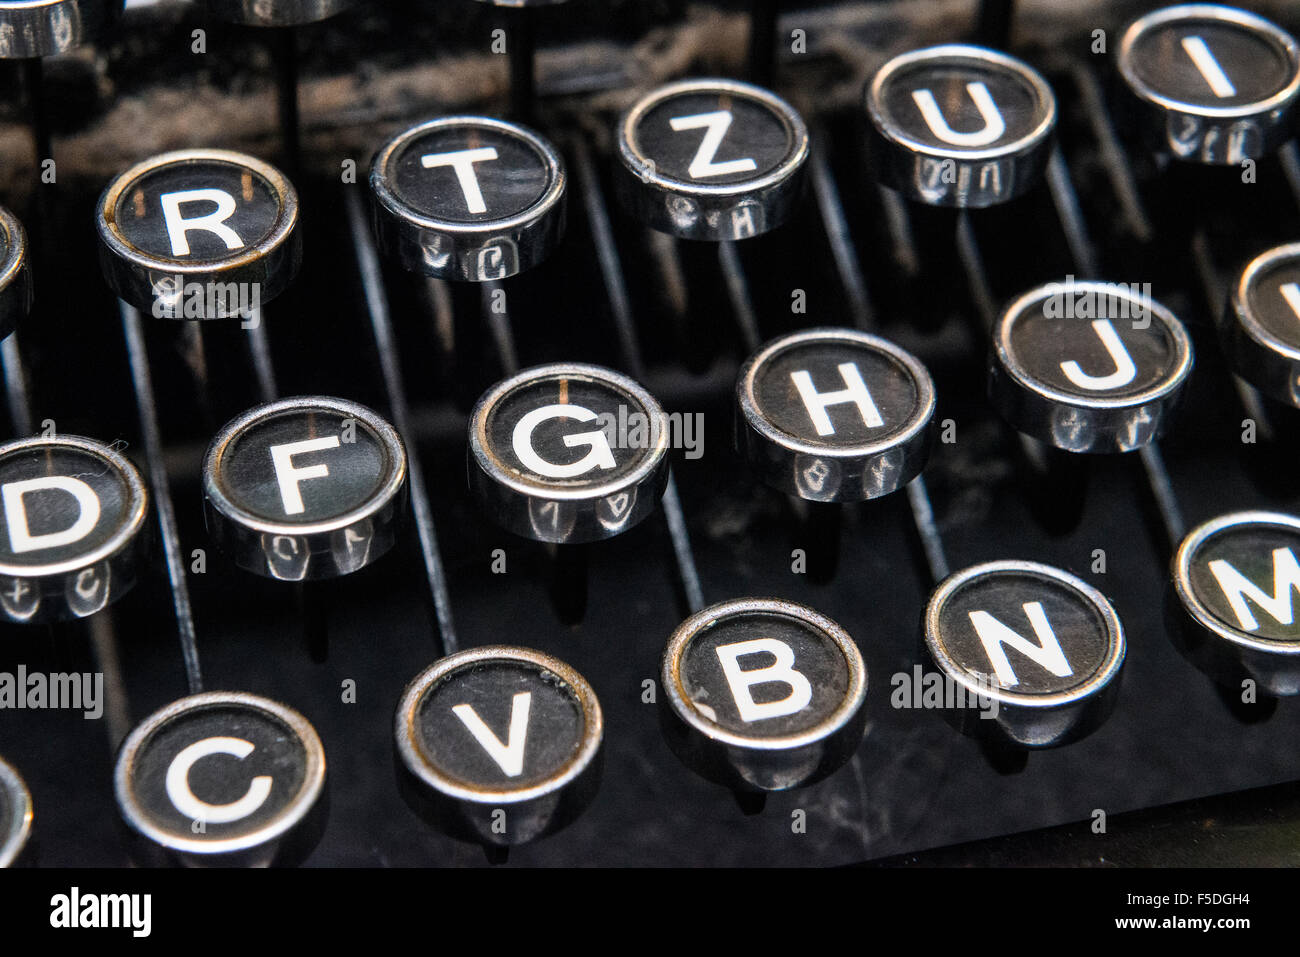 Keyboard on a vintage typewriter, Antique typewriter key, Typebar of a typewriter Stock Photo